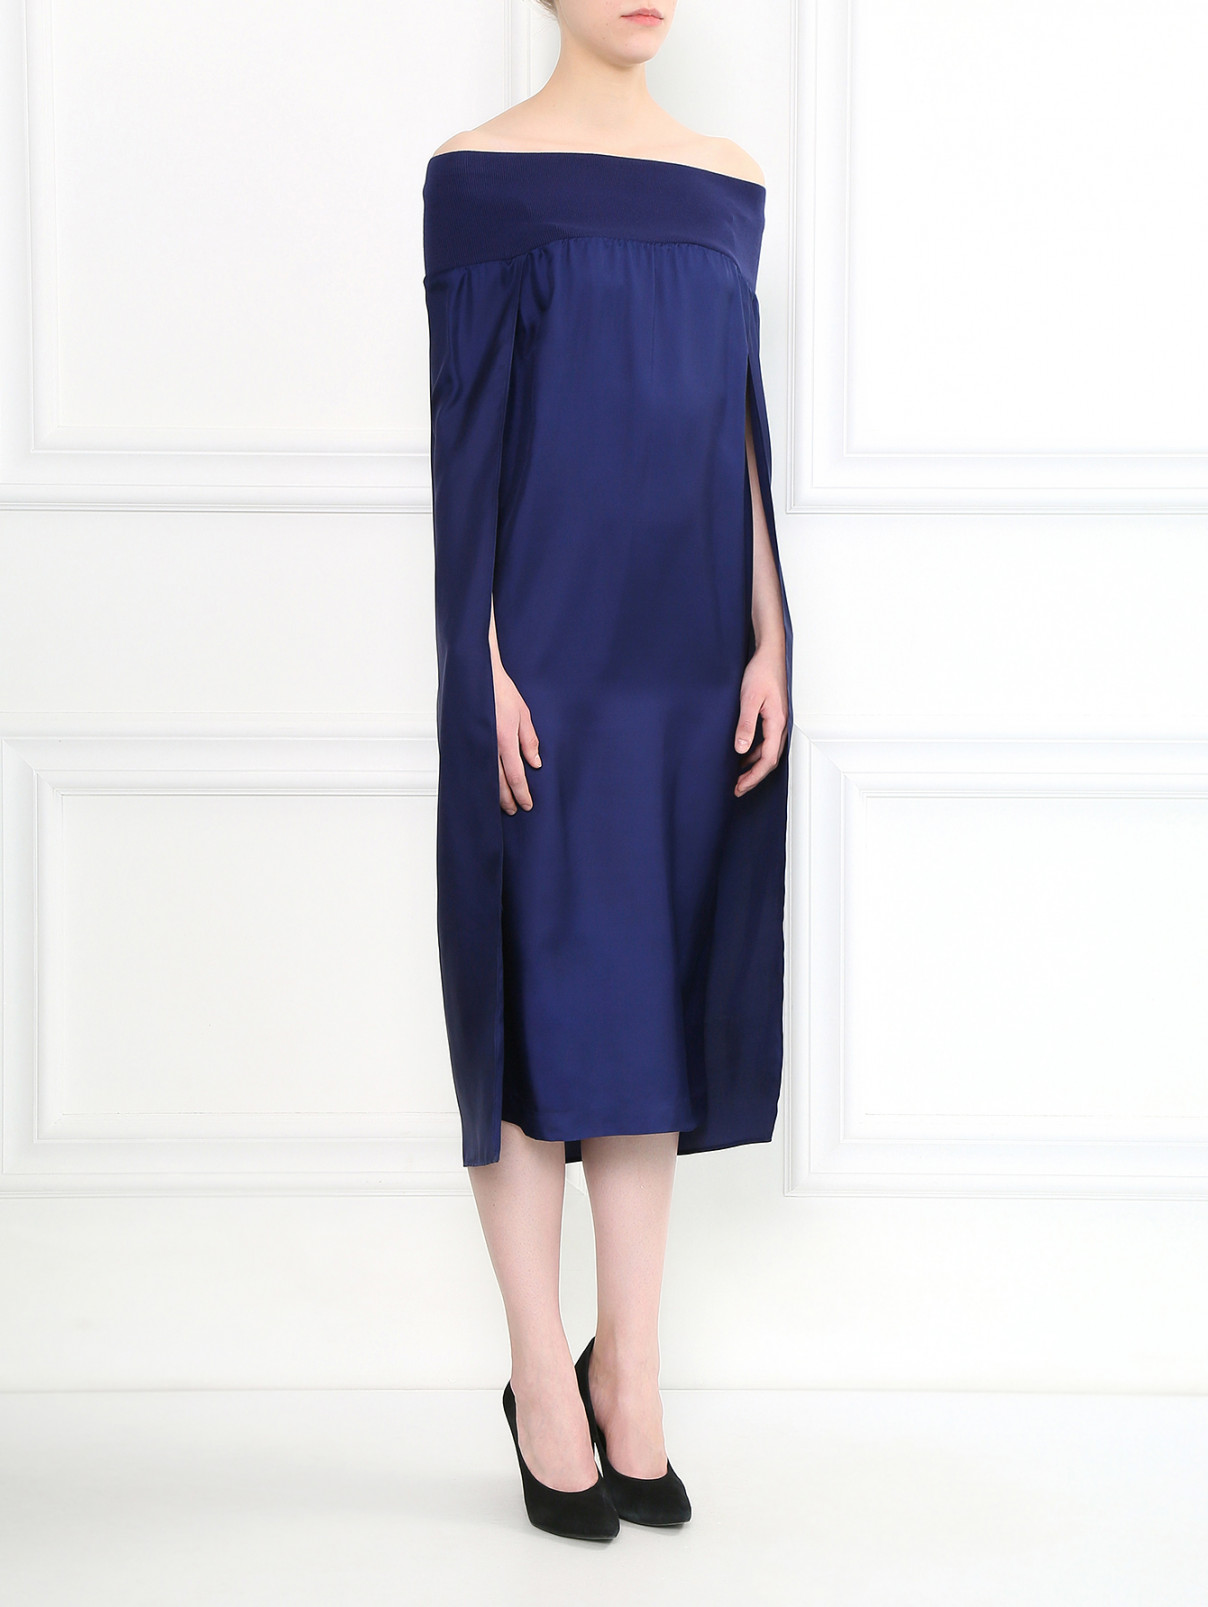 Платье свободного фасона из шелка на резинке Veronique Branquinho  –  Модель Общий вид  – Цвет:  Синий